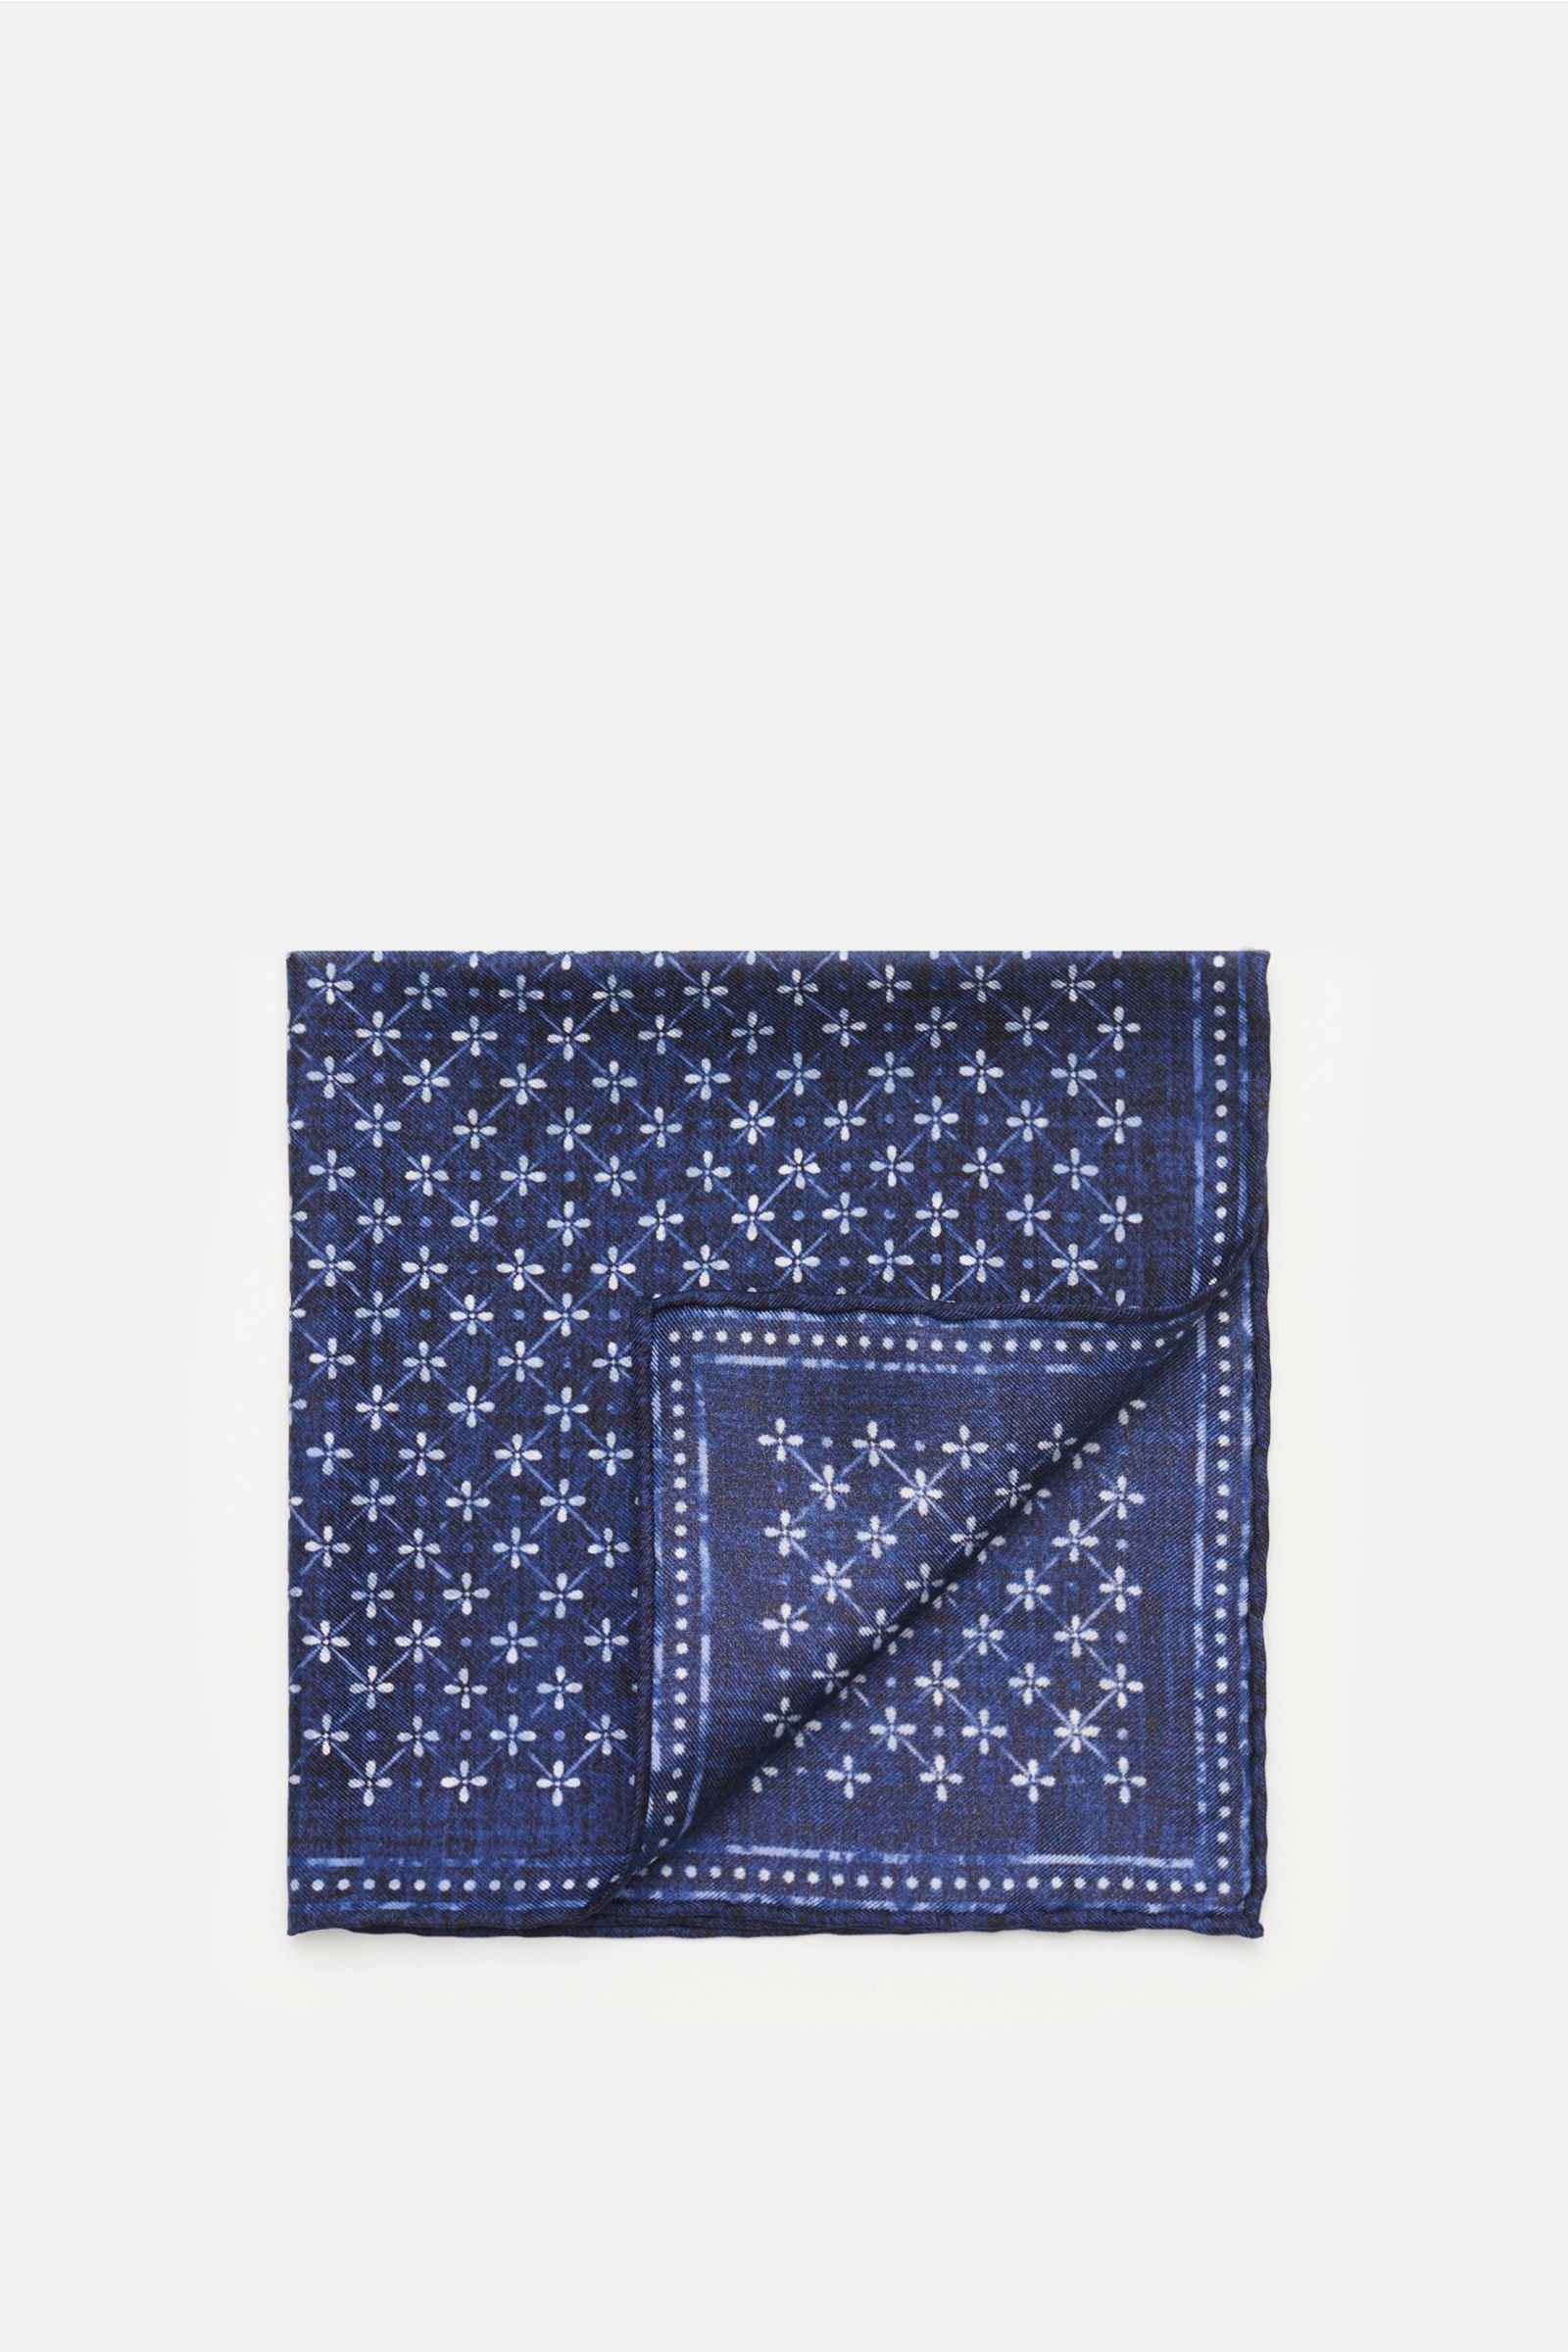 Pocket square dark blue patterned